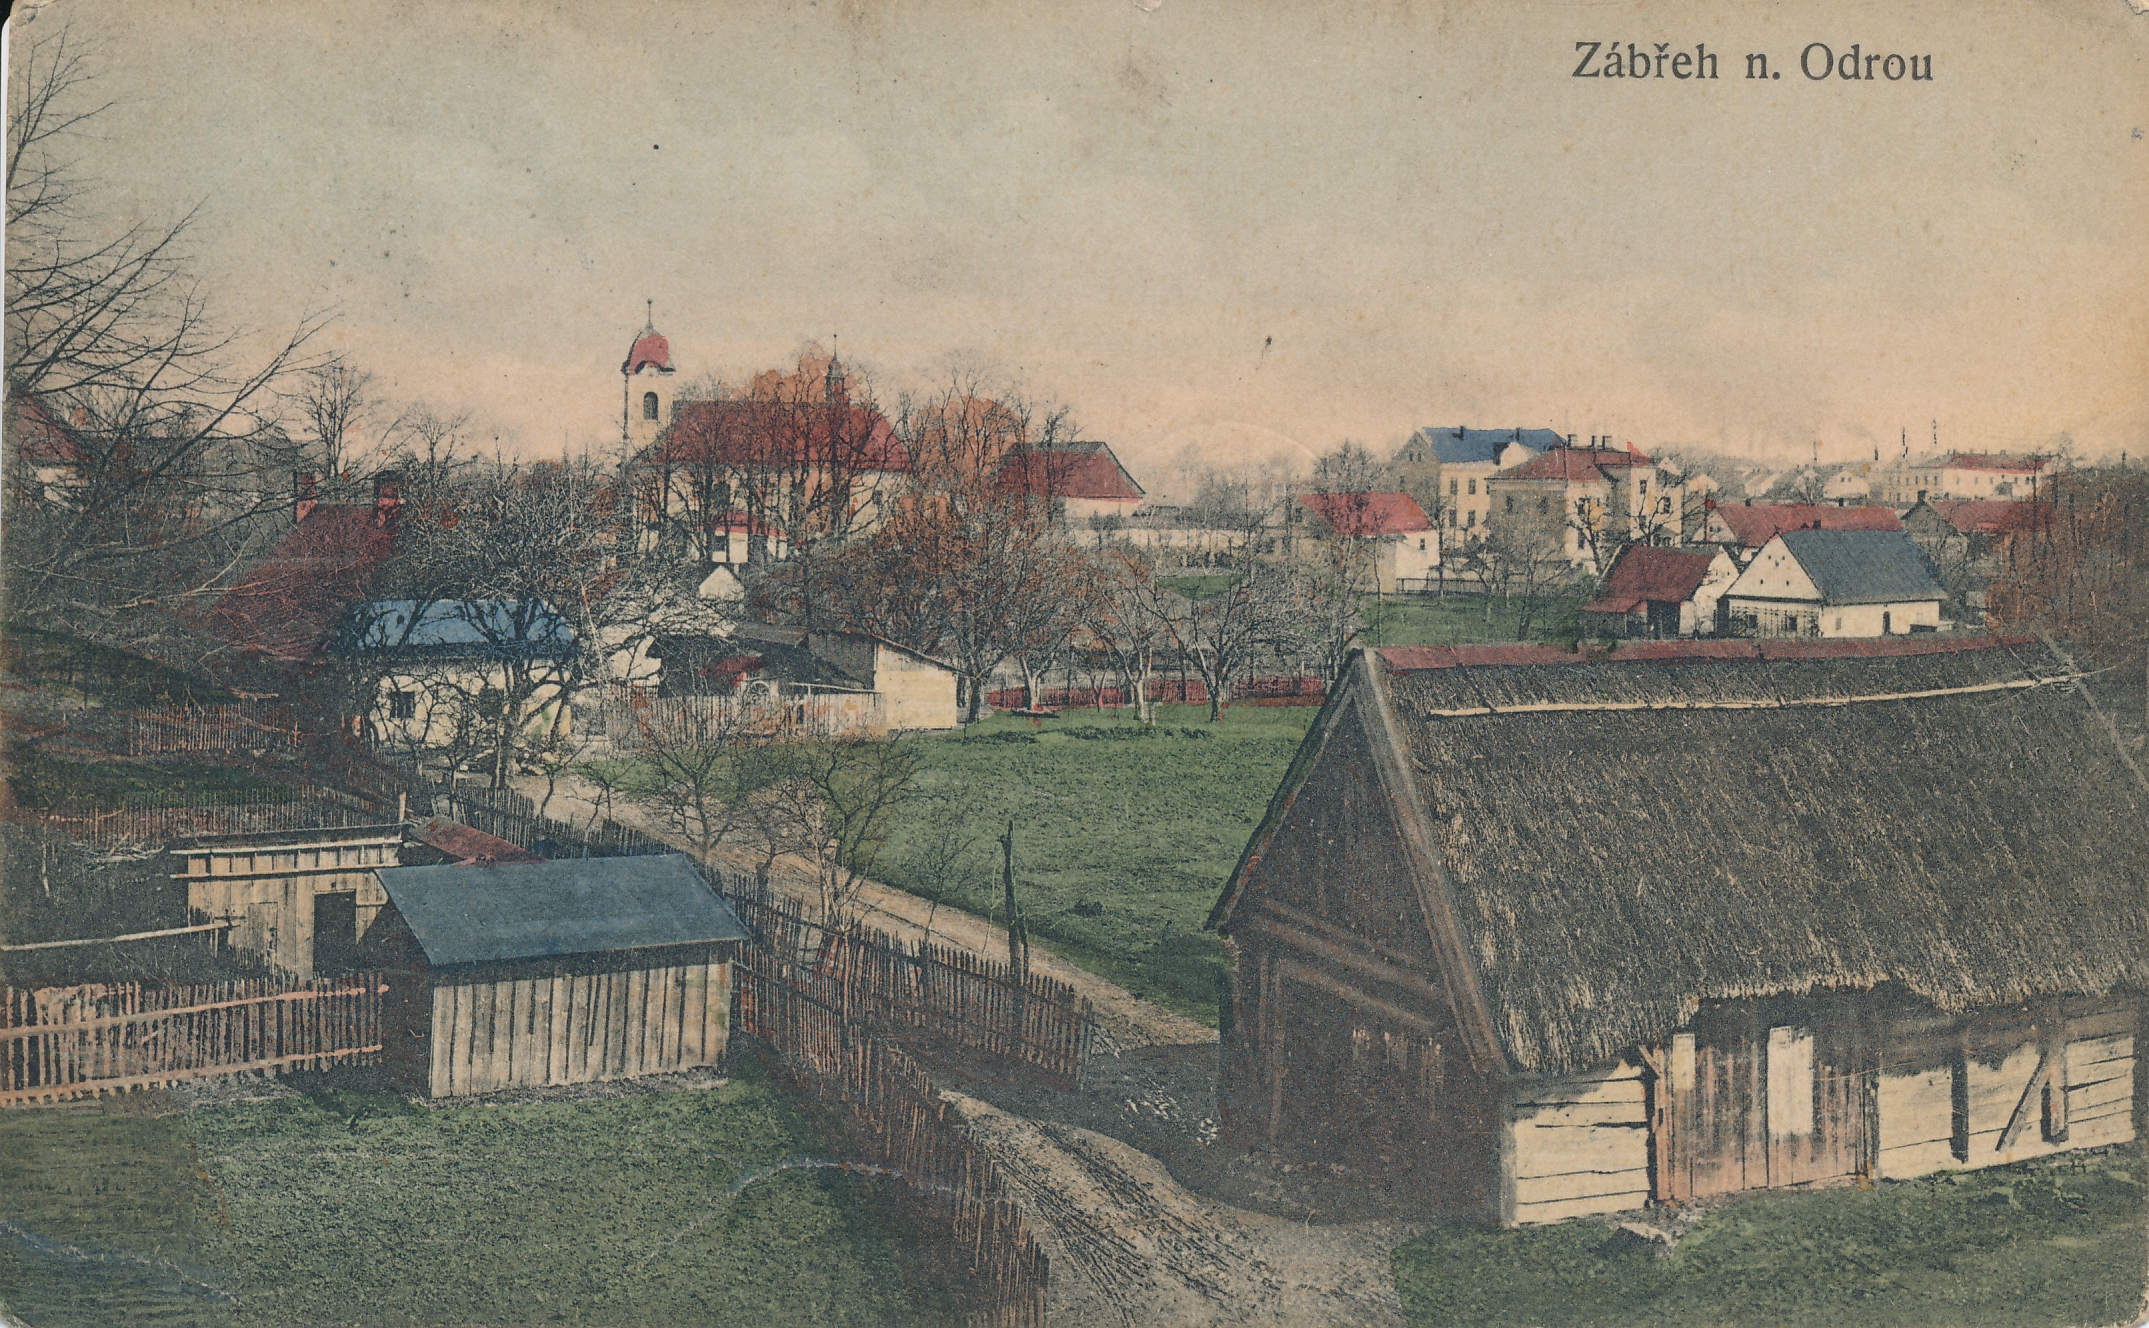 Historické centrum starého Zábřehu jako ostrov minulosti uprostřed sídliště